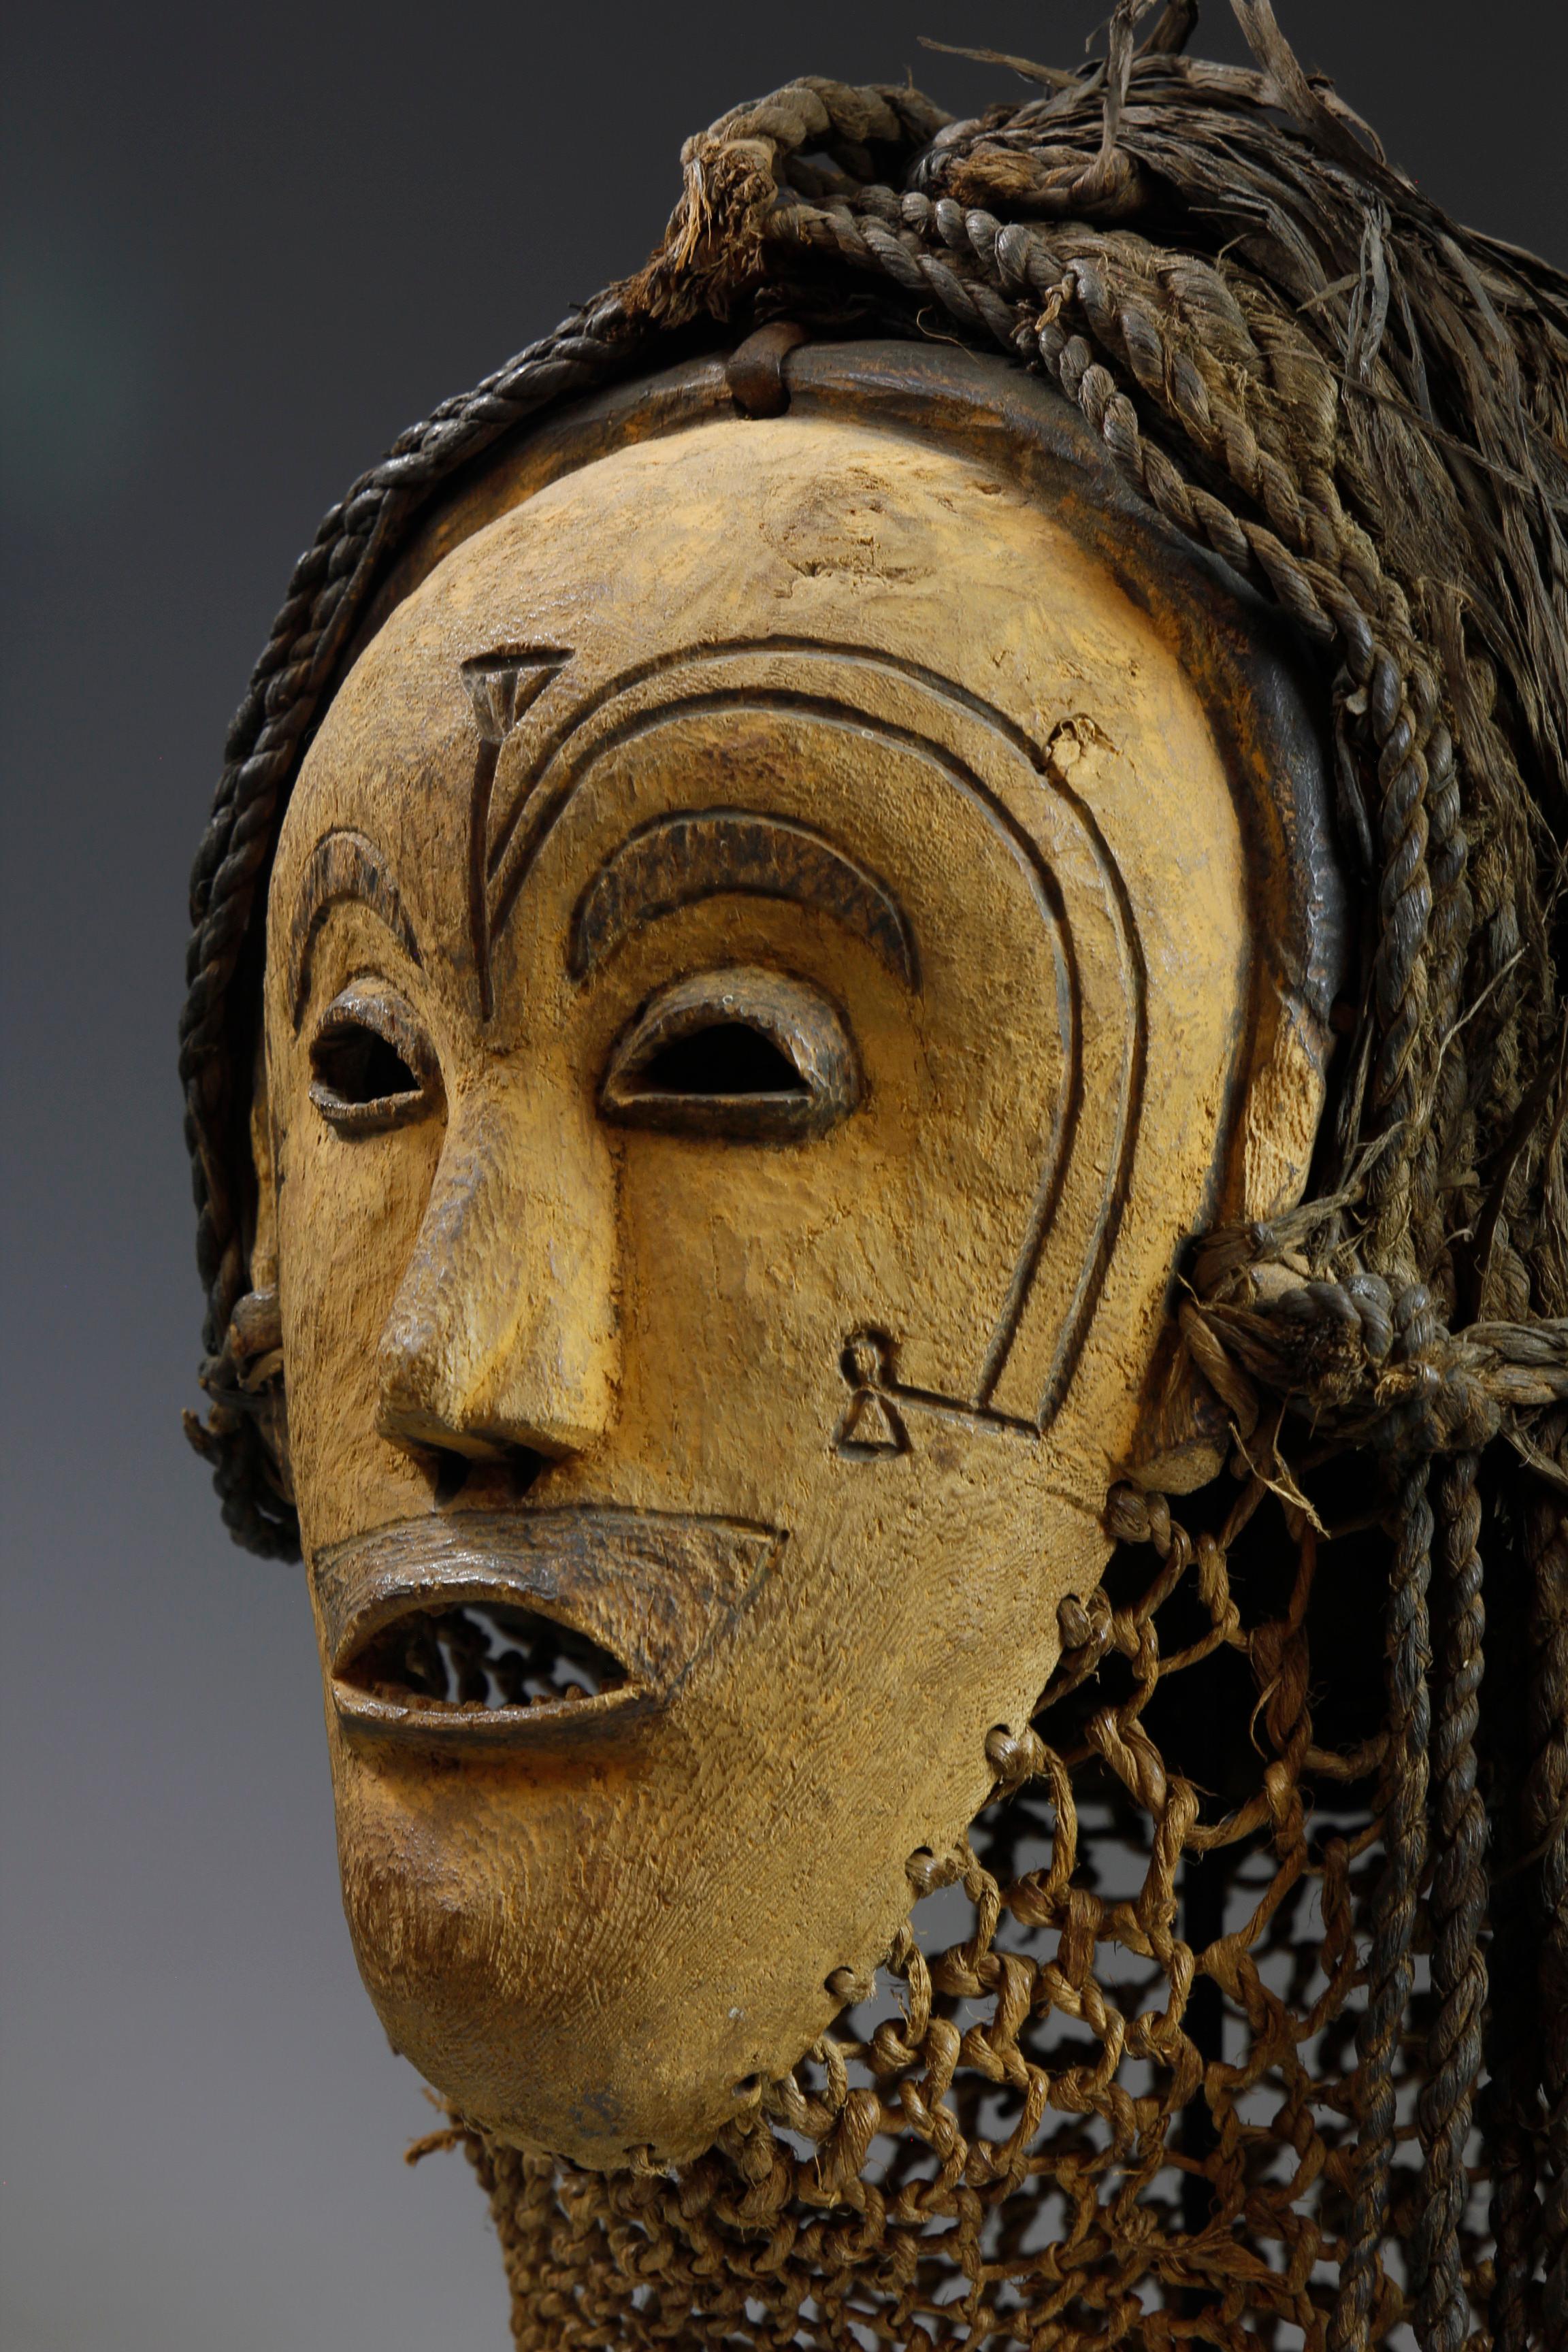 Diese Maske aus dem frühen zwanzigsten Jahrhundert aus der Chokwe-Kultur in Angola weist ungewöhnliche Merkmale auf. Die aus hellem Holz geschnitzte und mit gelben Pigmenten verzierte Maske weist seltene, in die Oberfläche eingebrannte Gesichtszüge